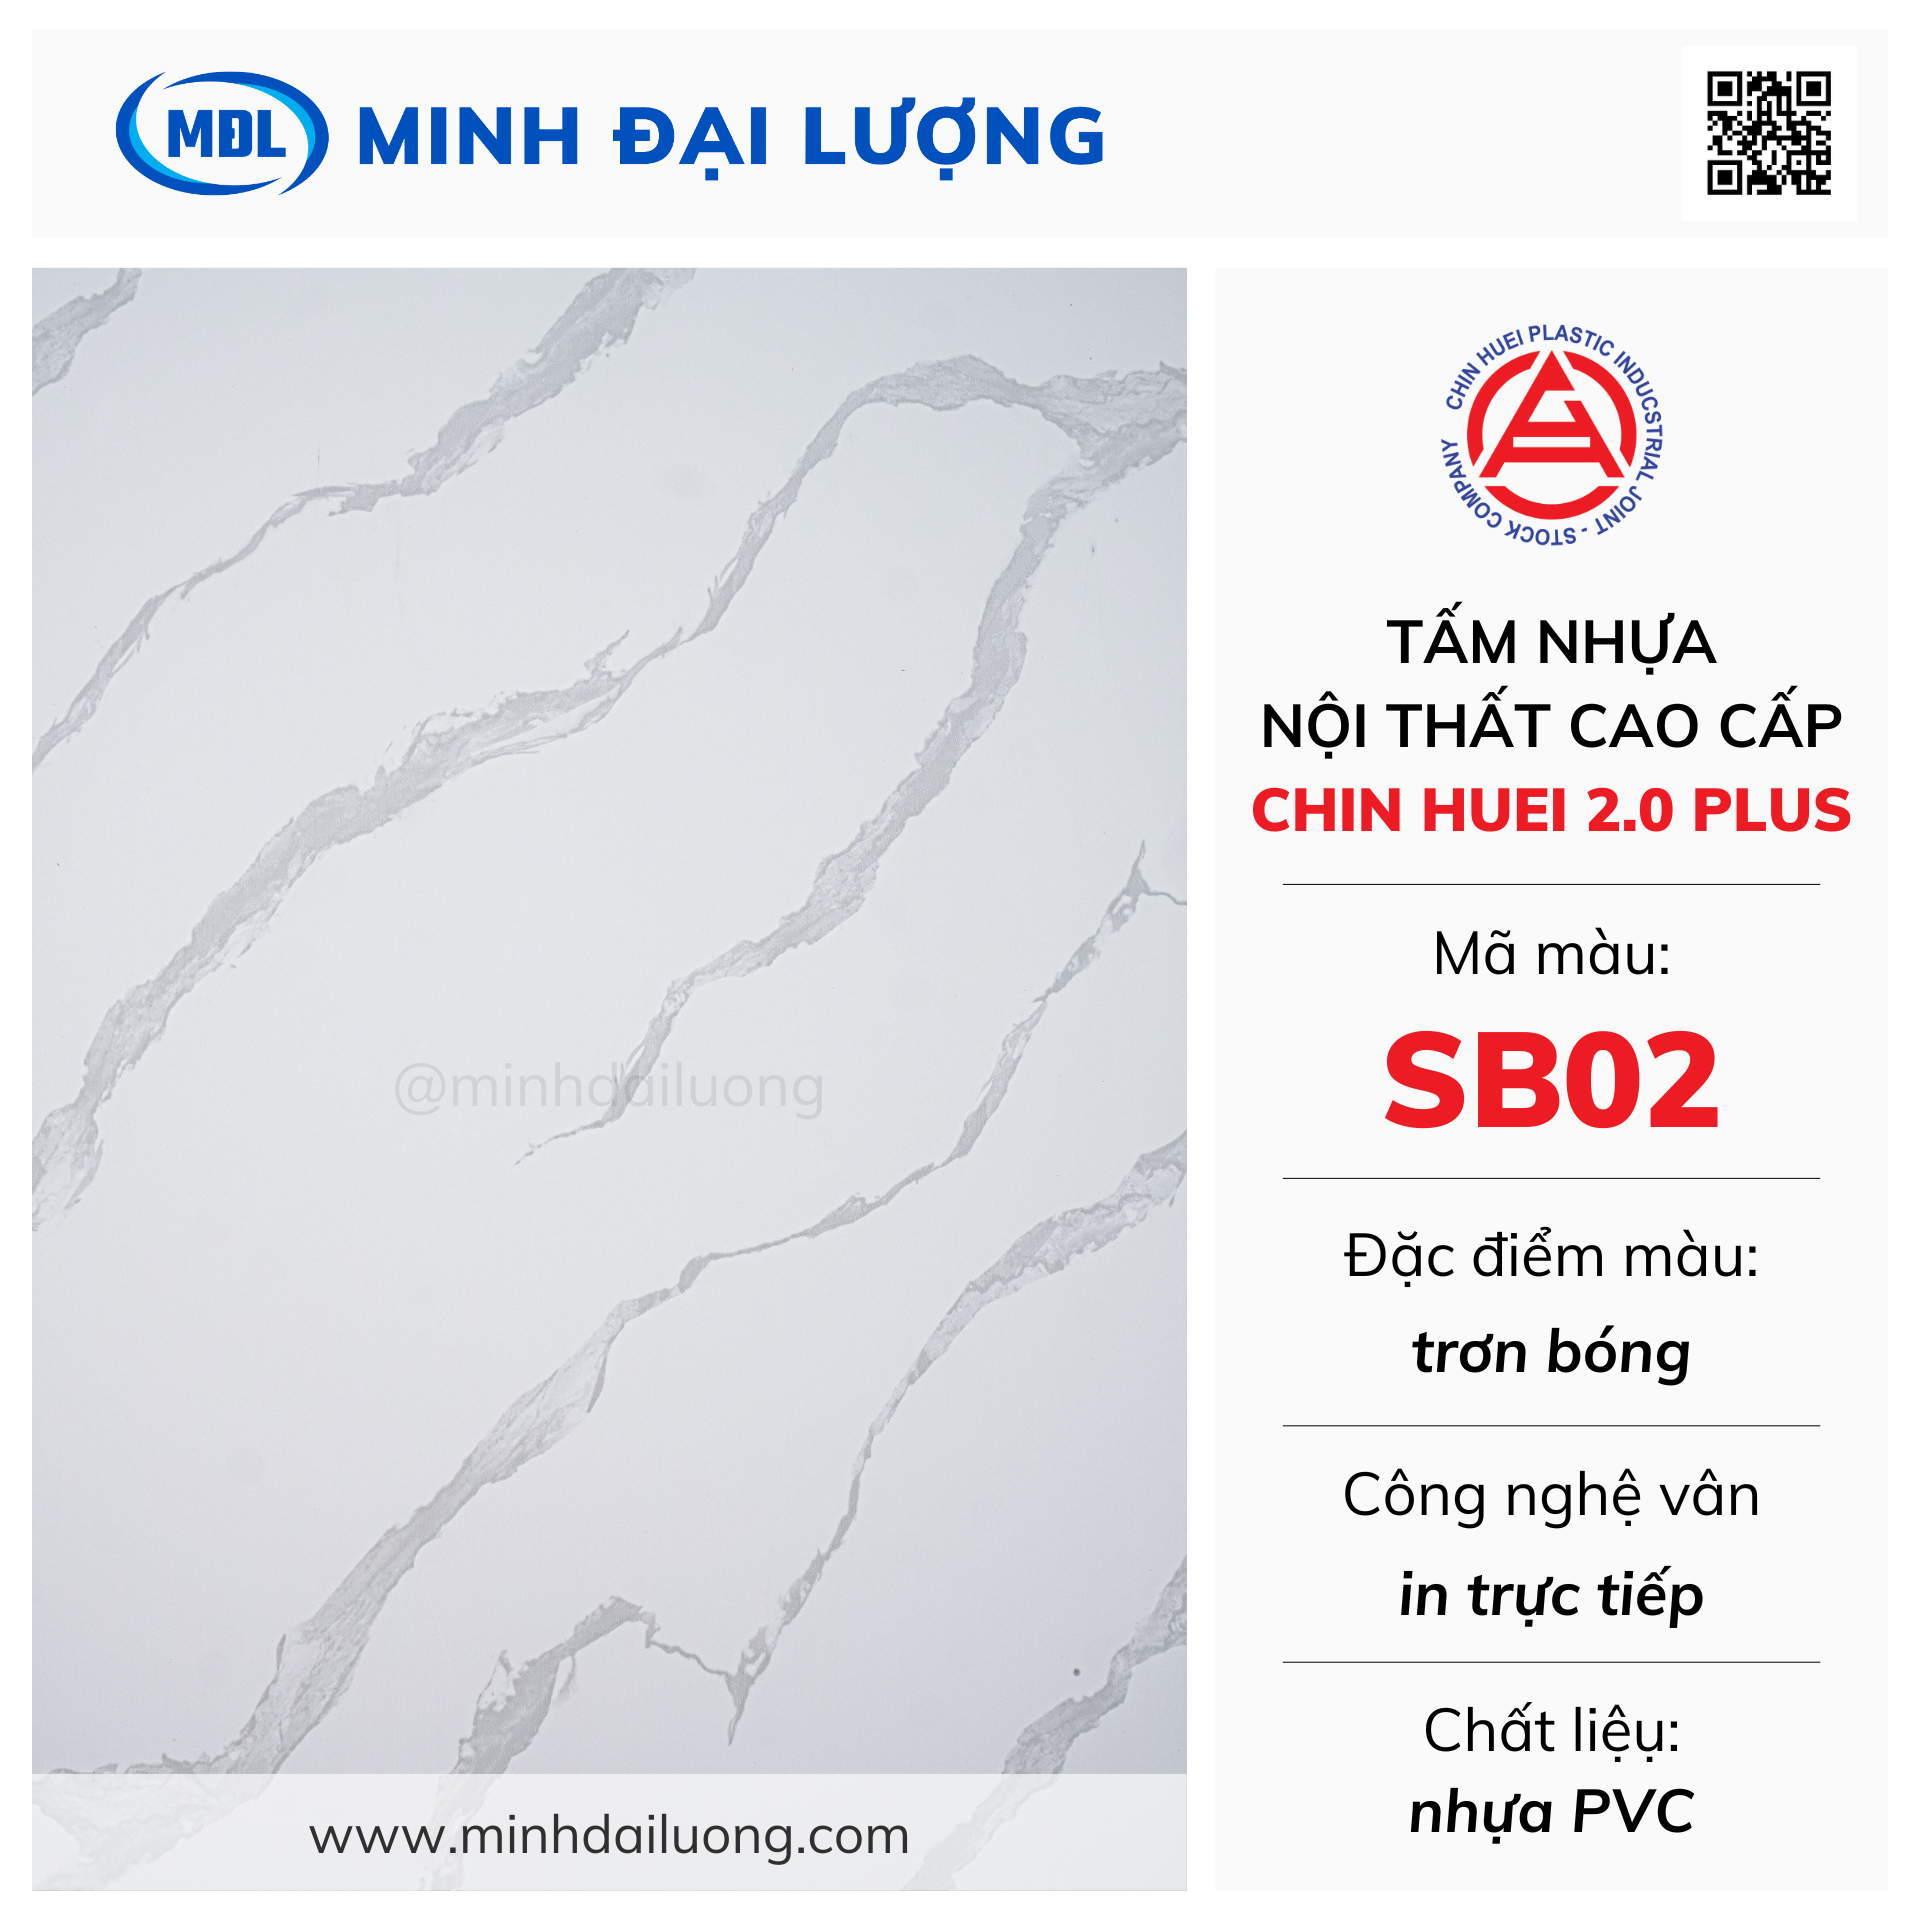 Tấm nhựa nội thất cao cấp Chin Huei 2.0 Plus màu SB02